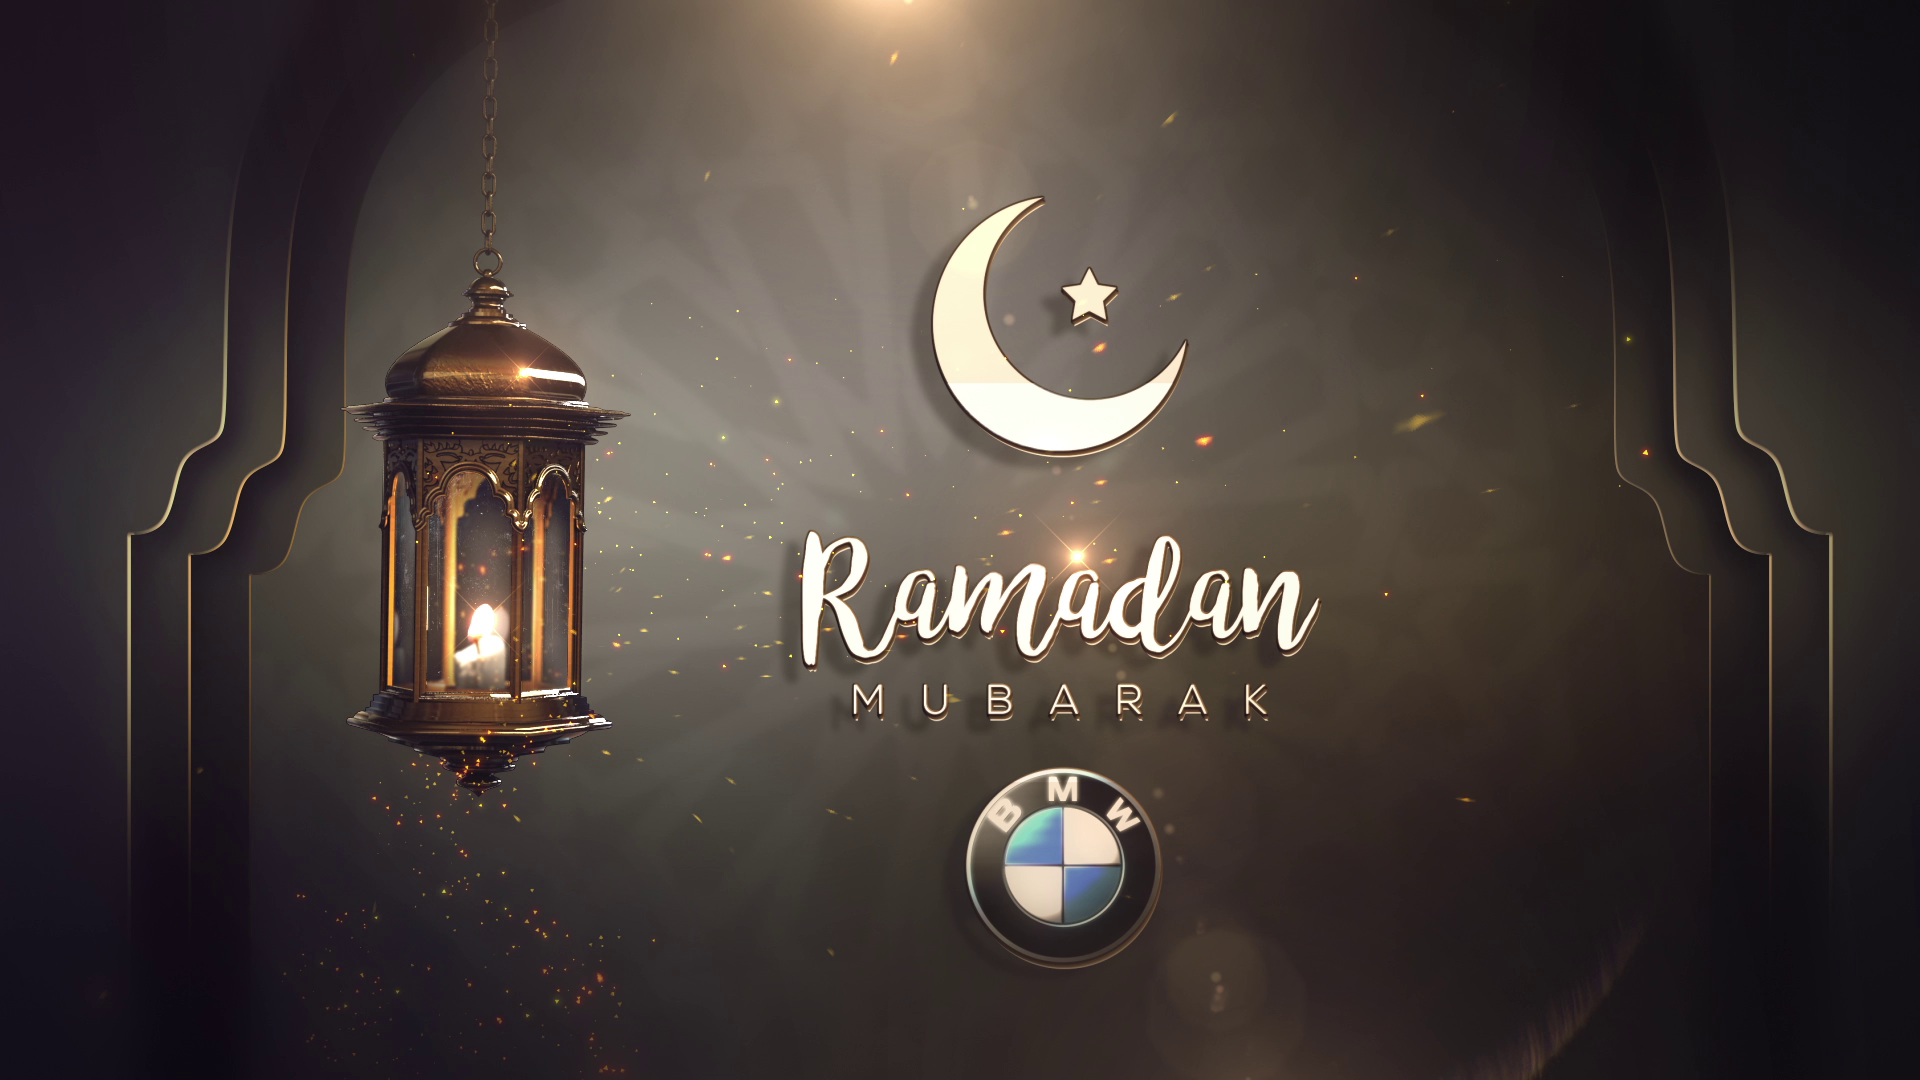 Обои в стиле рамадан. Рамазан мубарак. Рамазан Eid Mubarak. Рамадан 2021 мубарак. Рамадан фон.